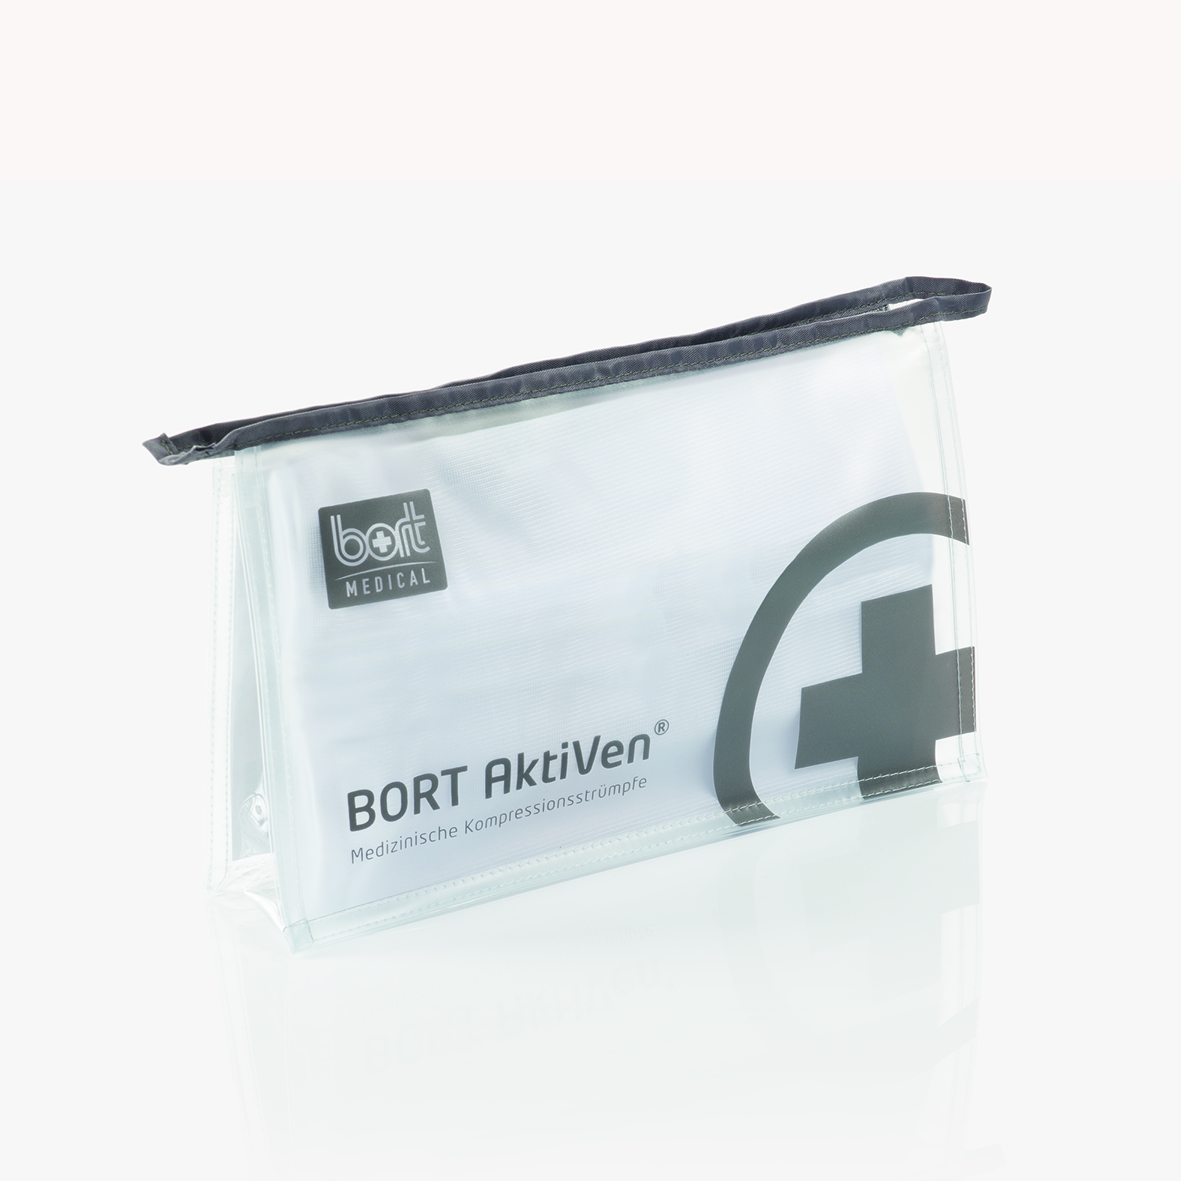 BORT AktiVen® Starter-Paket für medizinische Kompressionsstrümpfe